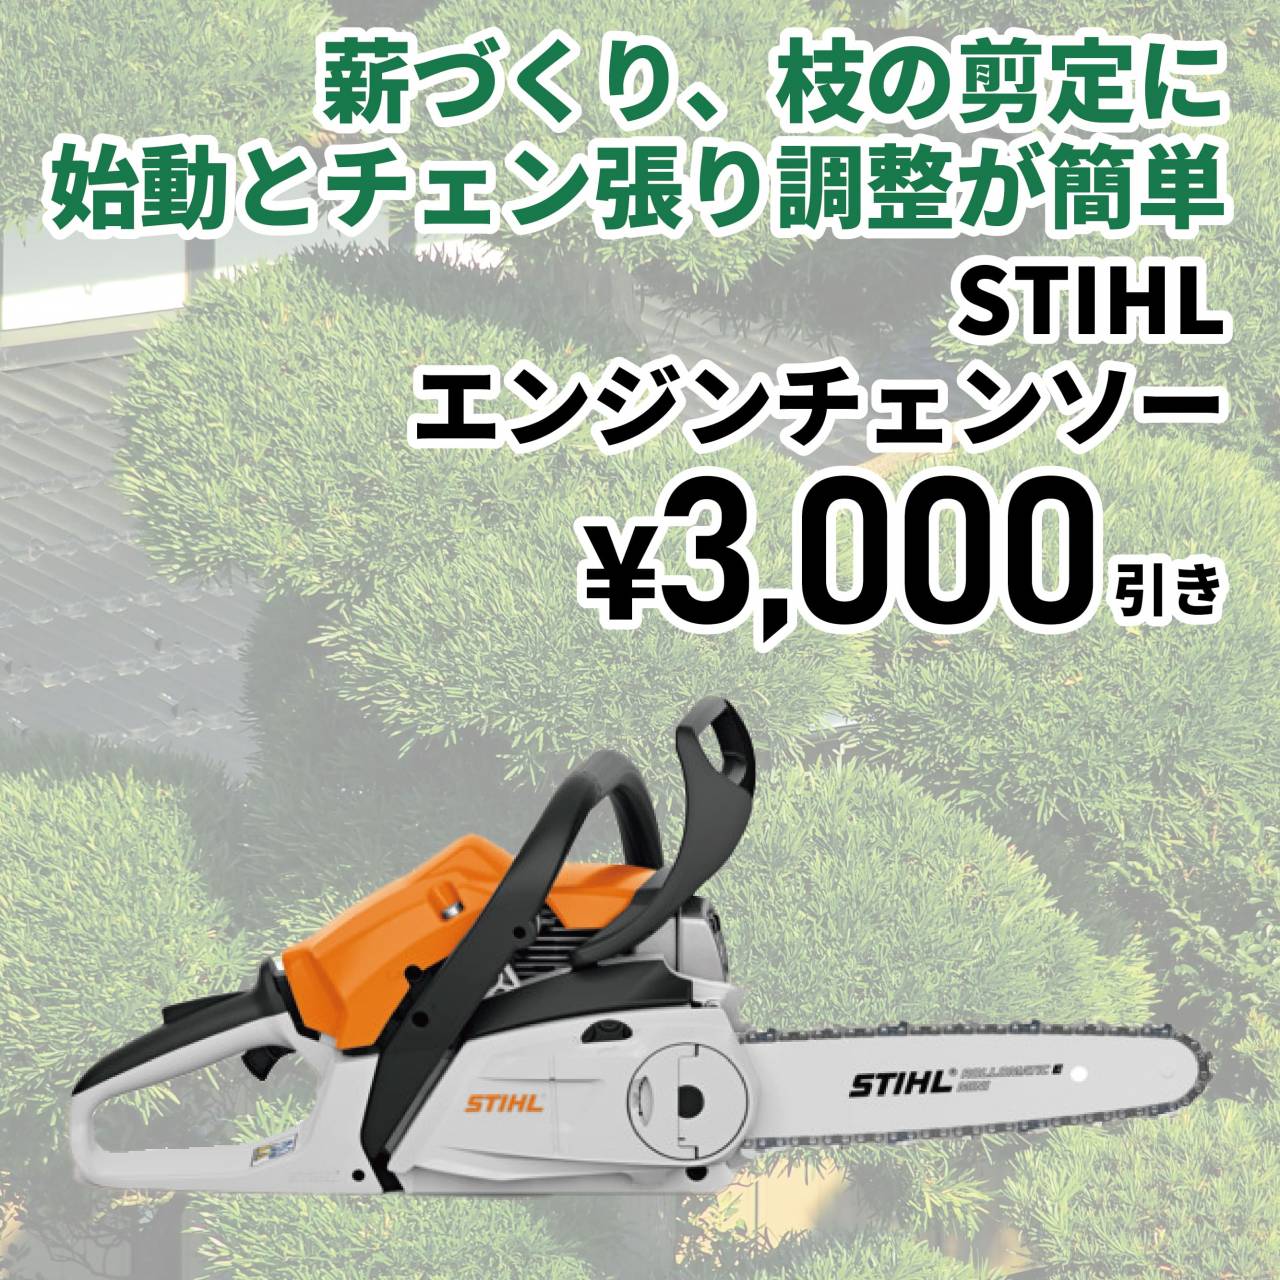 【3,000円値引き】STIHLエンジンチェンソー(通常価格38,500円)